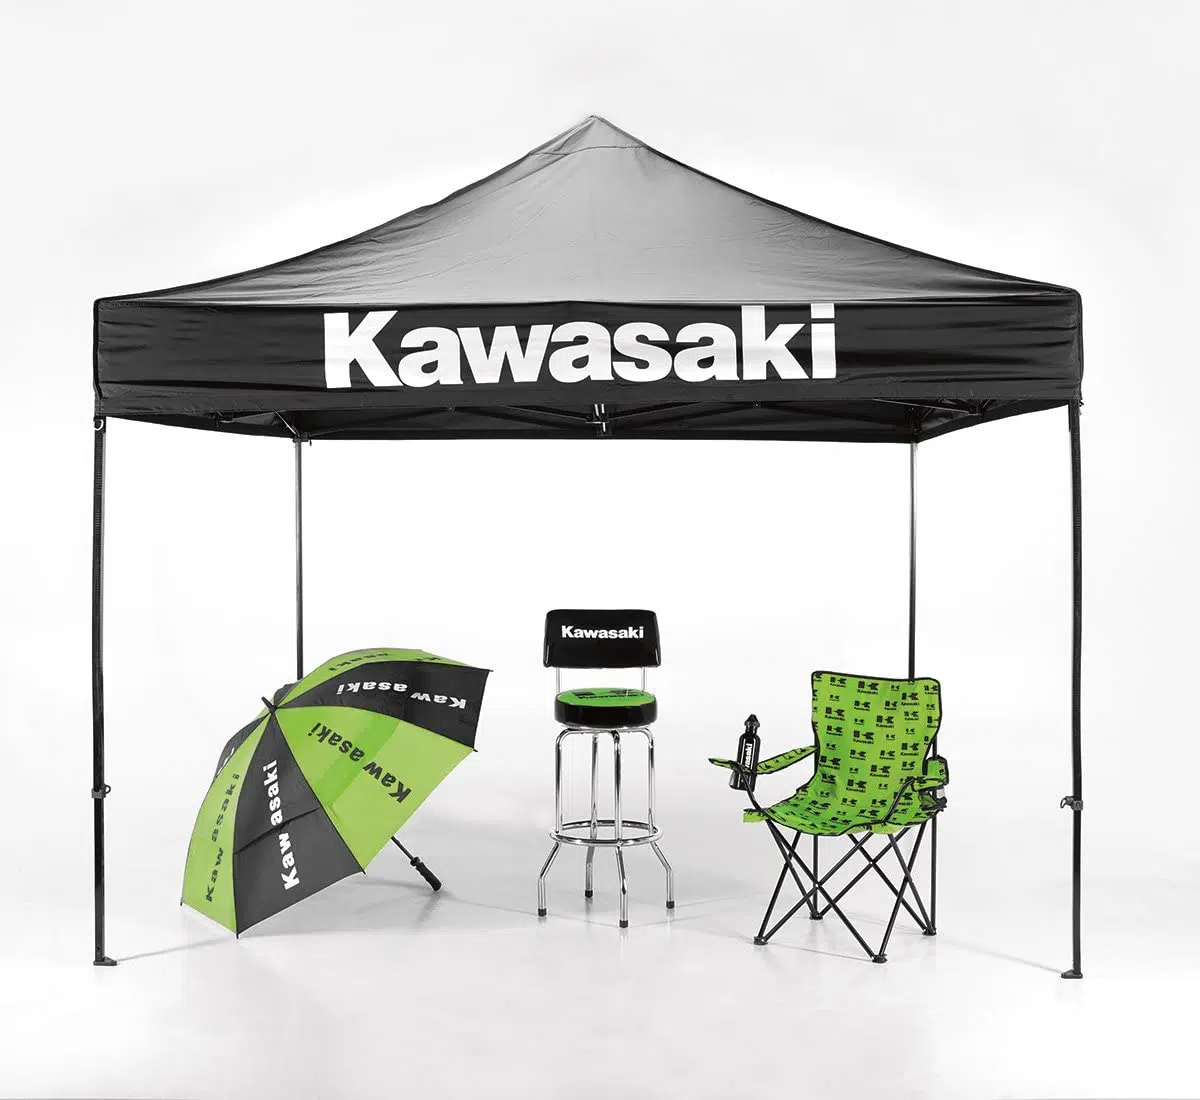 Tente, chaise et parapluie de marque Kawasaki